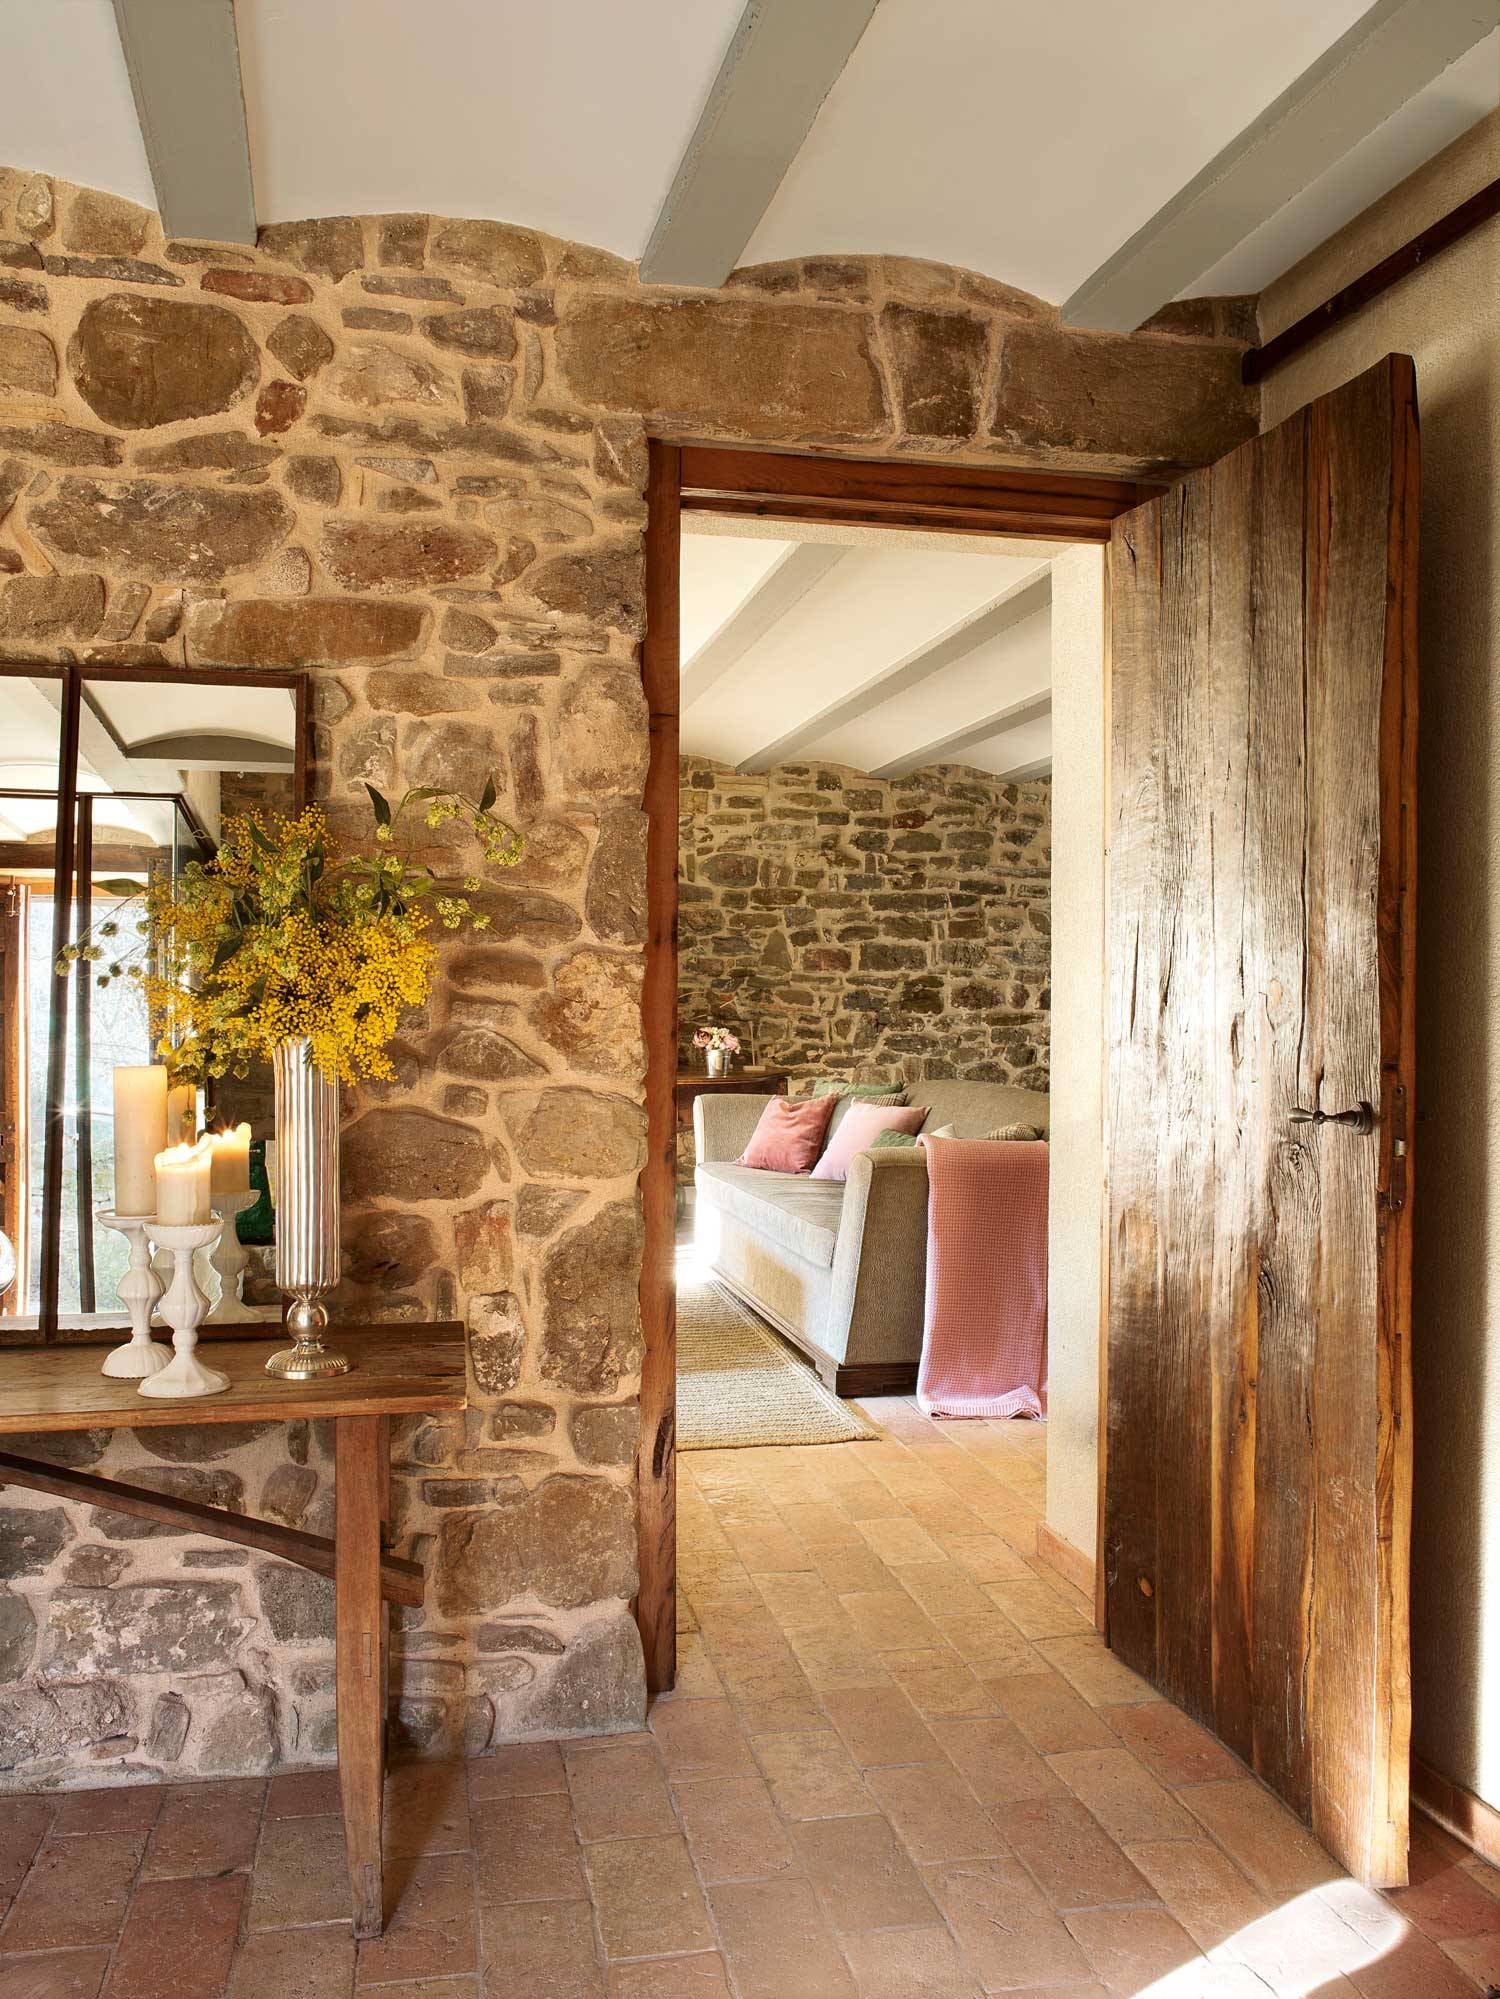 Recibidor rústico con pared de piedra, puerta de madera, consola de madera, espejo, velas y mimosas-360215